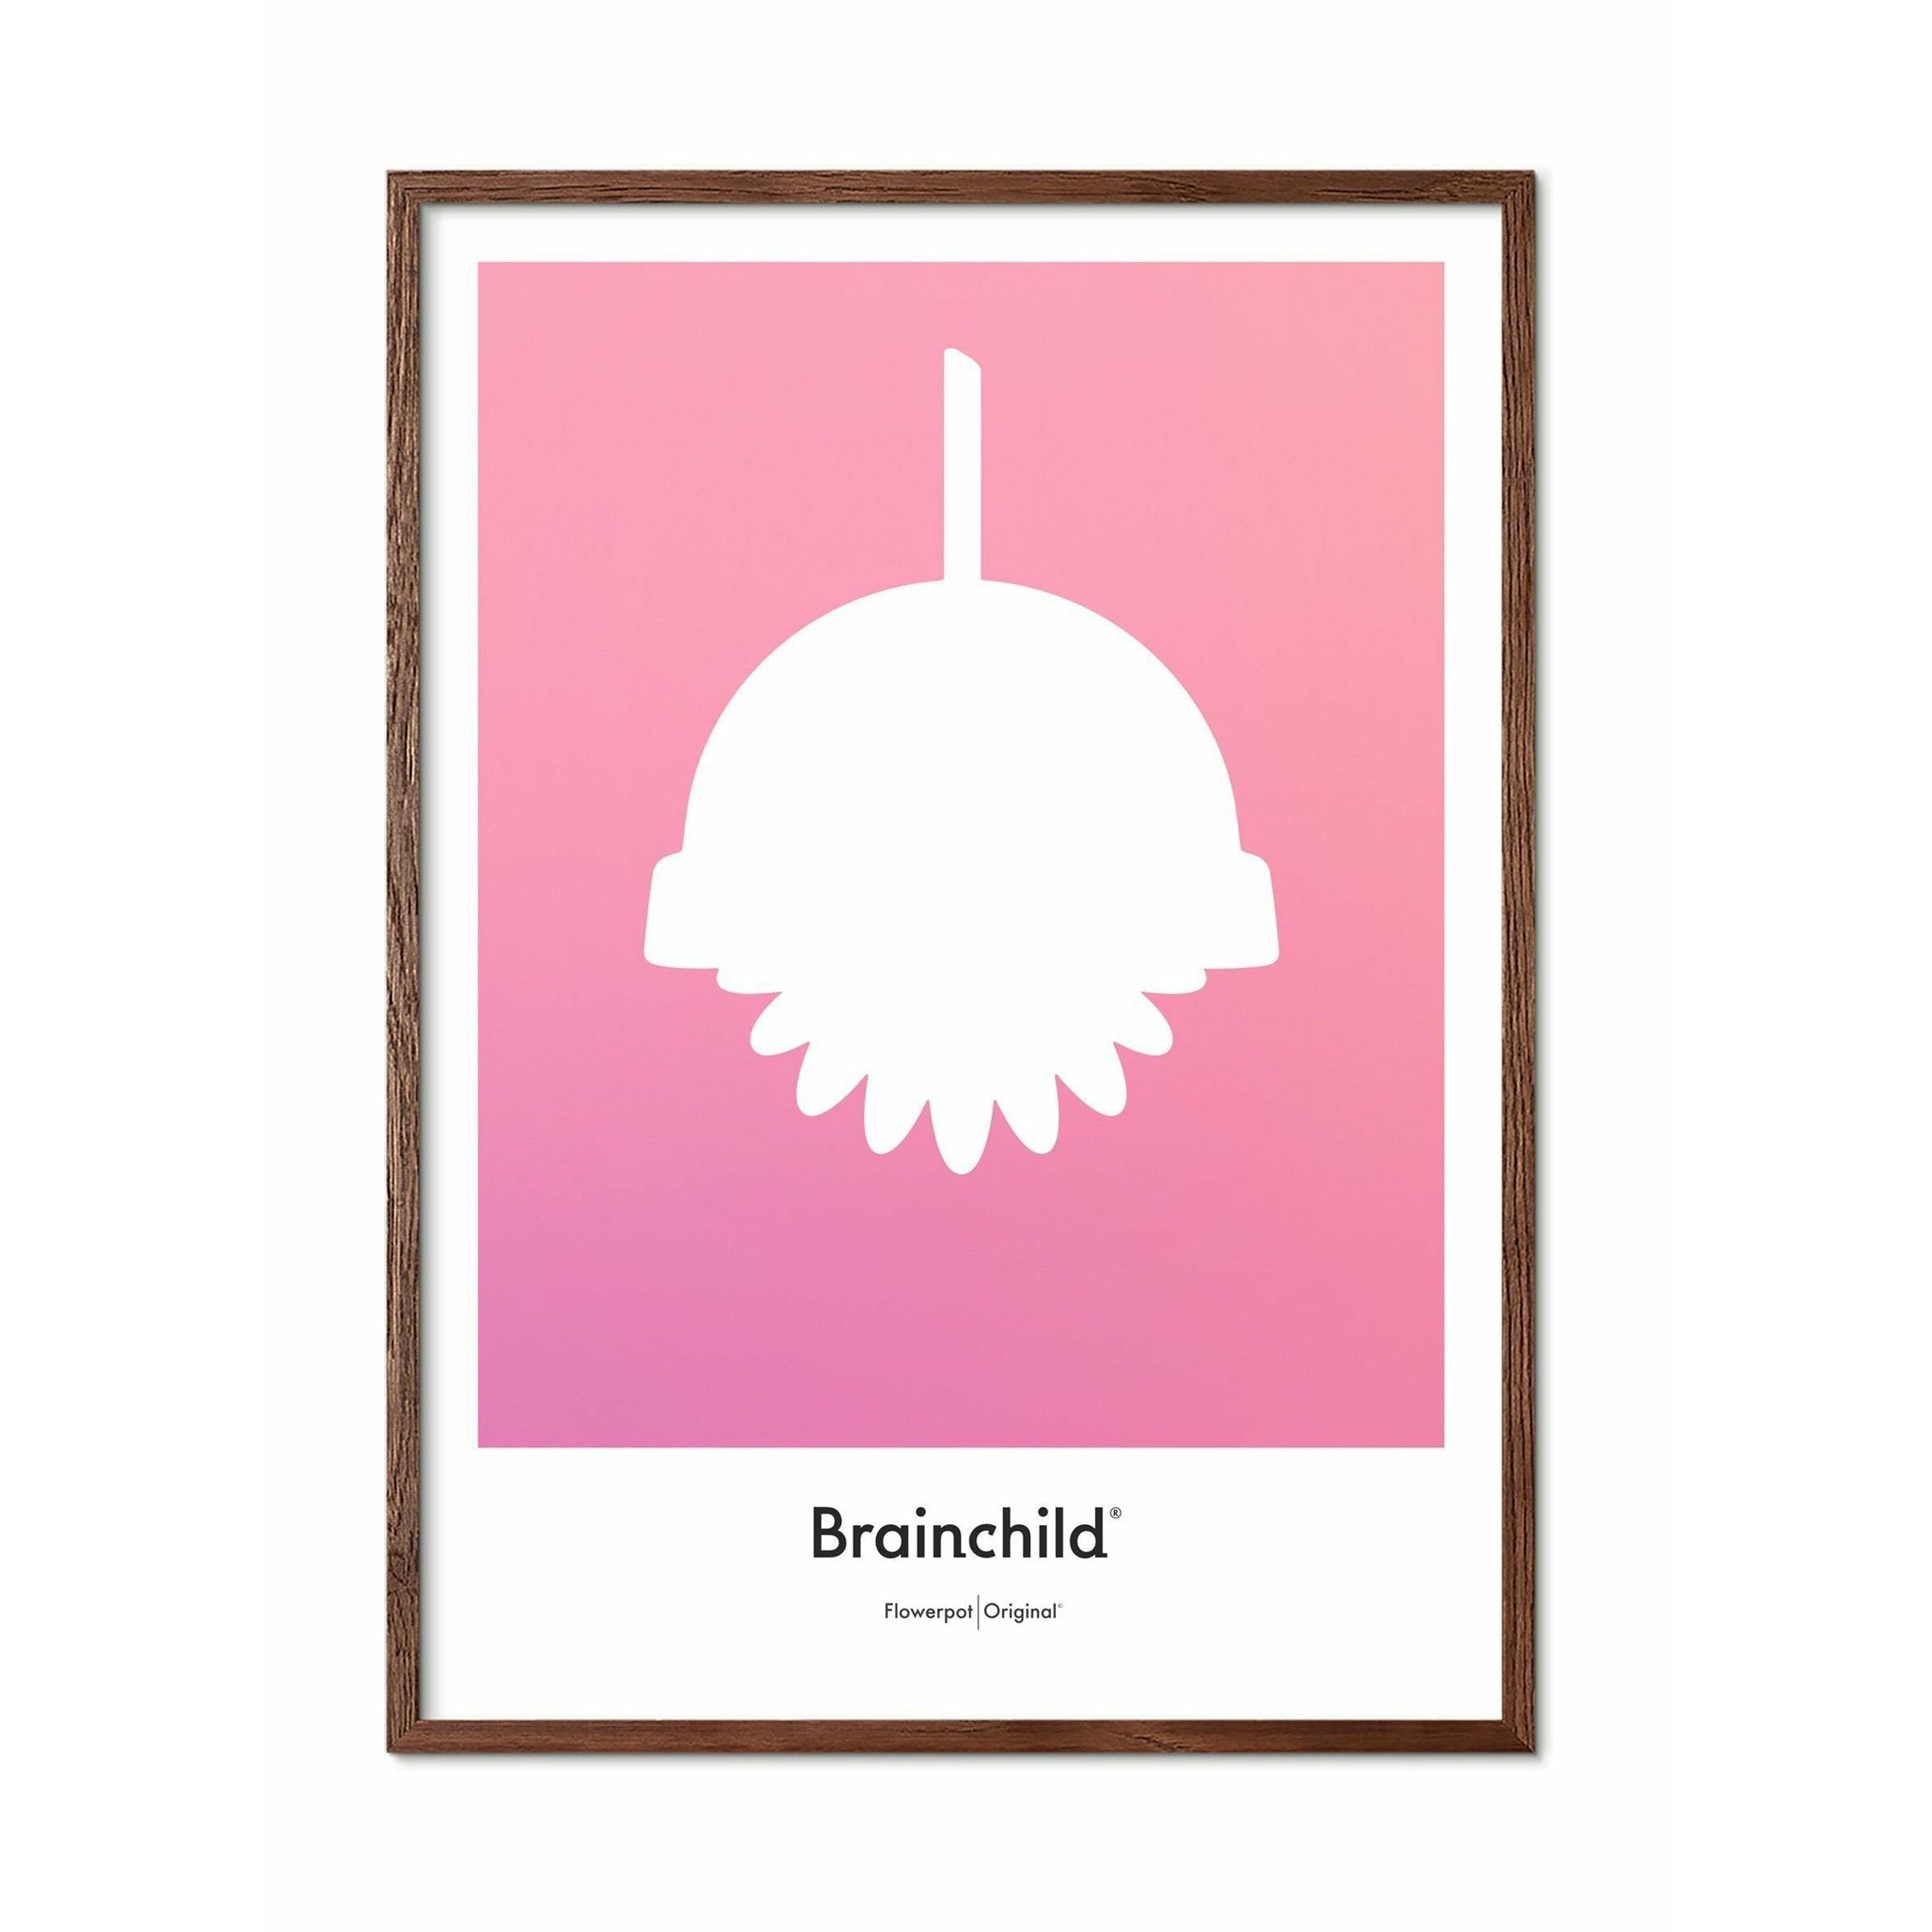 Brainchild Flowerpot Design Icon Poster, Frame Made Of Dark Wood 30x40 Cm, Pink